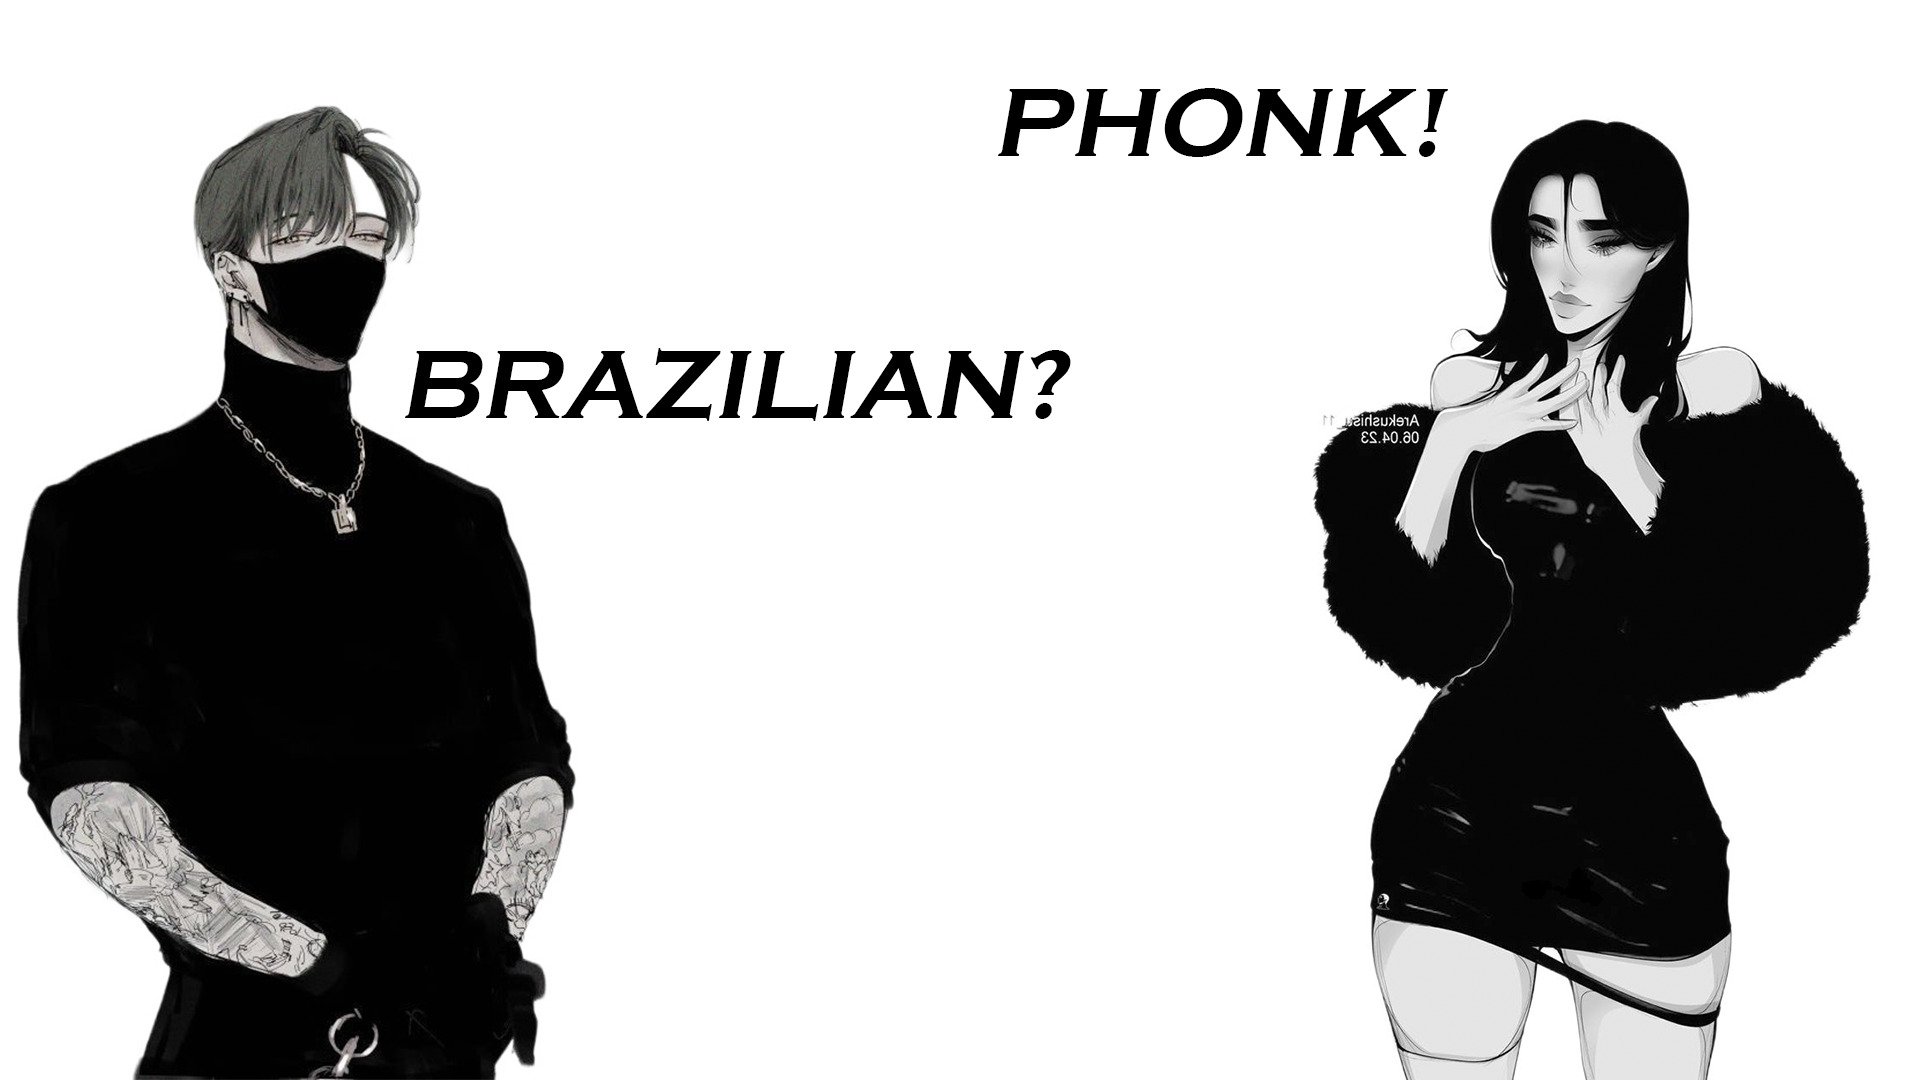 Brazilian phonk 1 hour